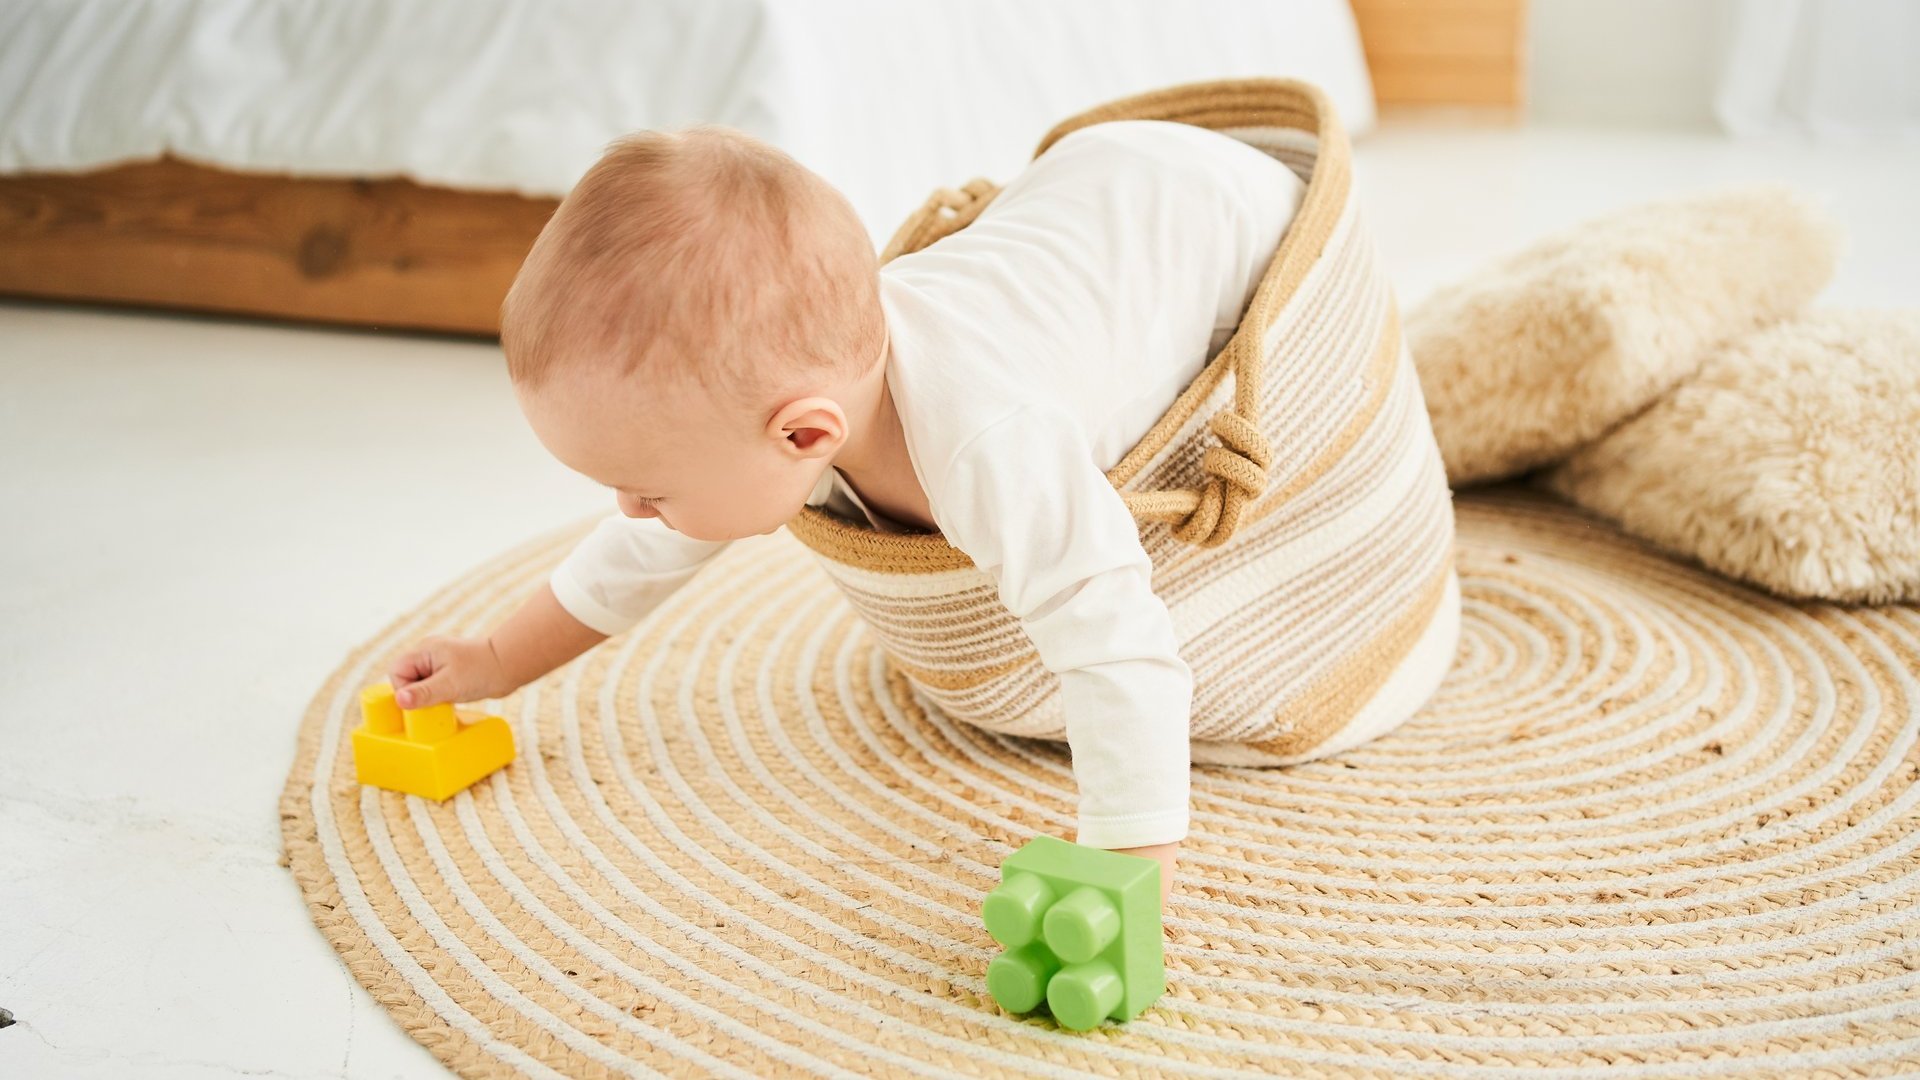 Ein Kleinkind versucht aus einem Korb am Boden rauszuklettern und mit buntem Spielzeug zu spielen.